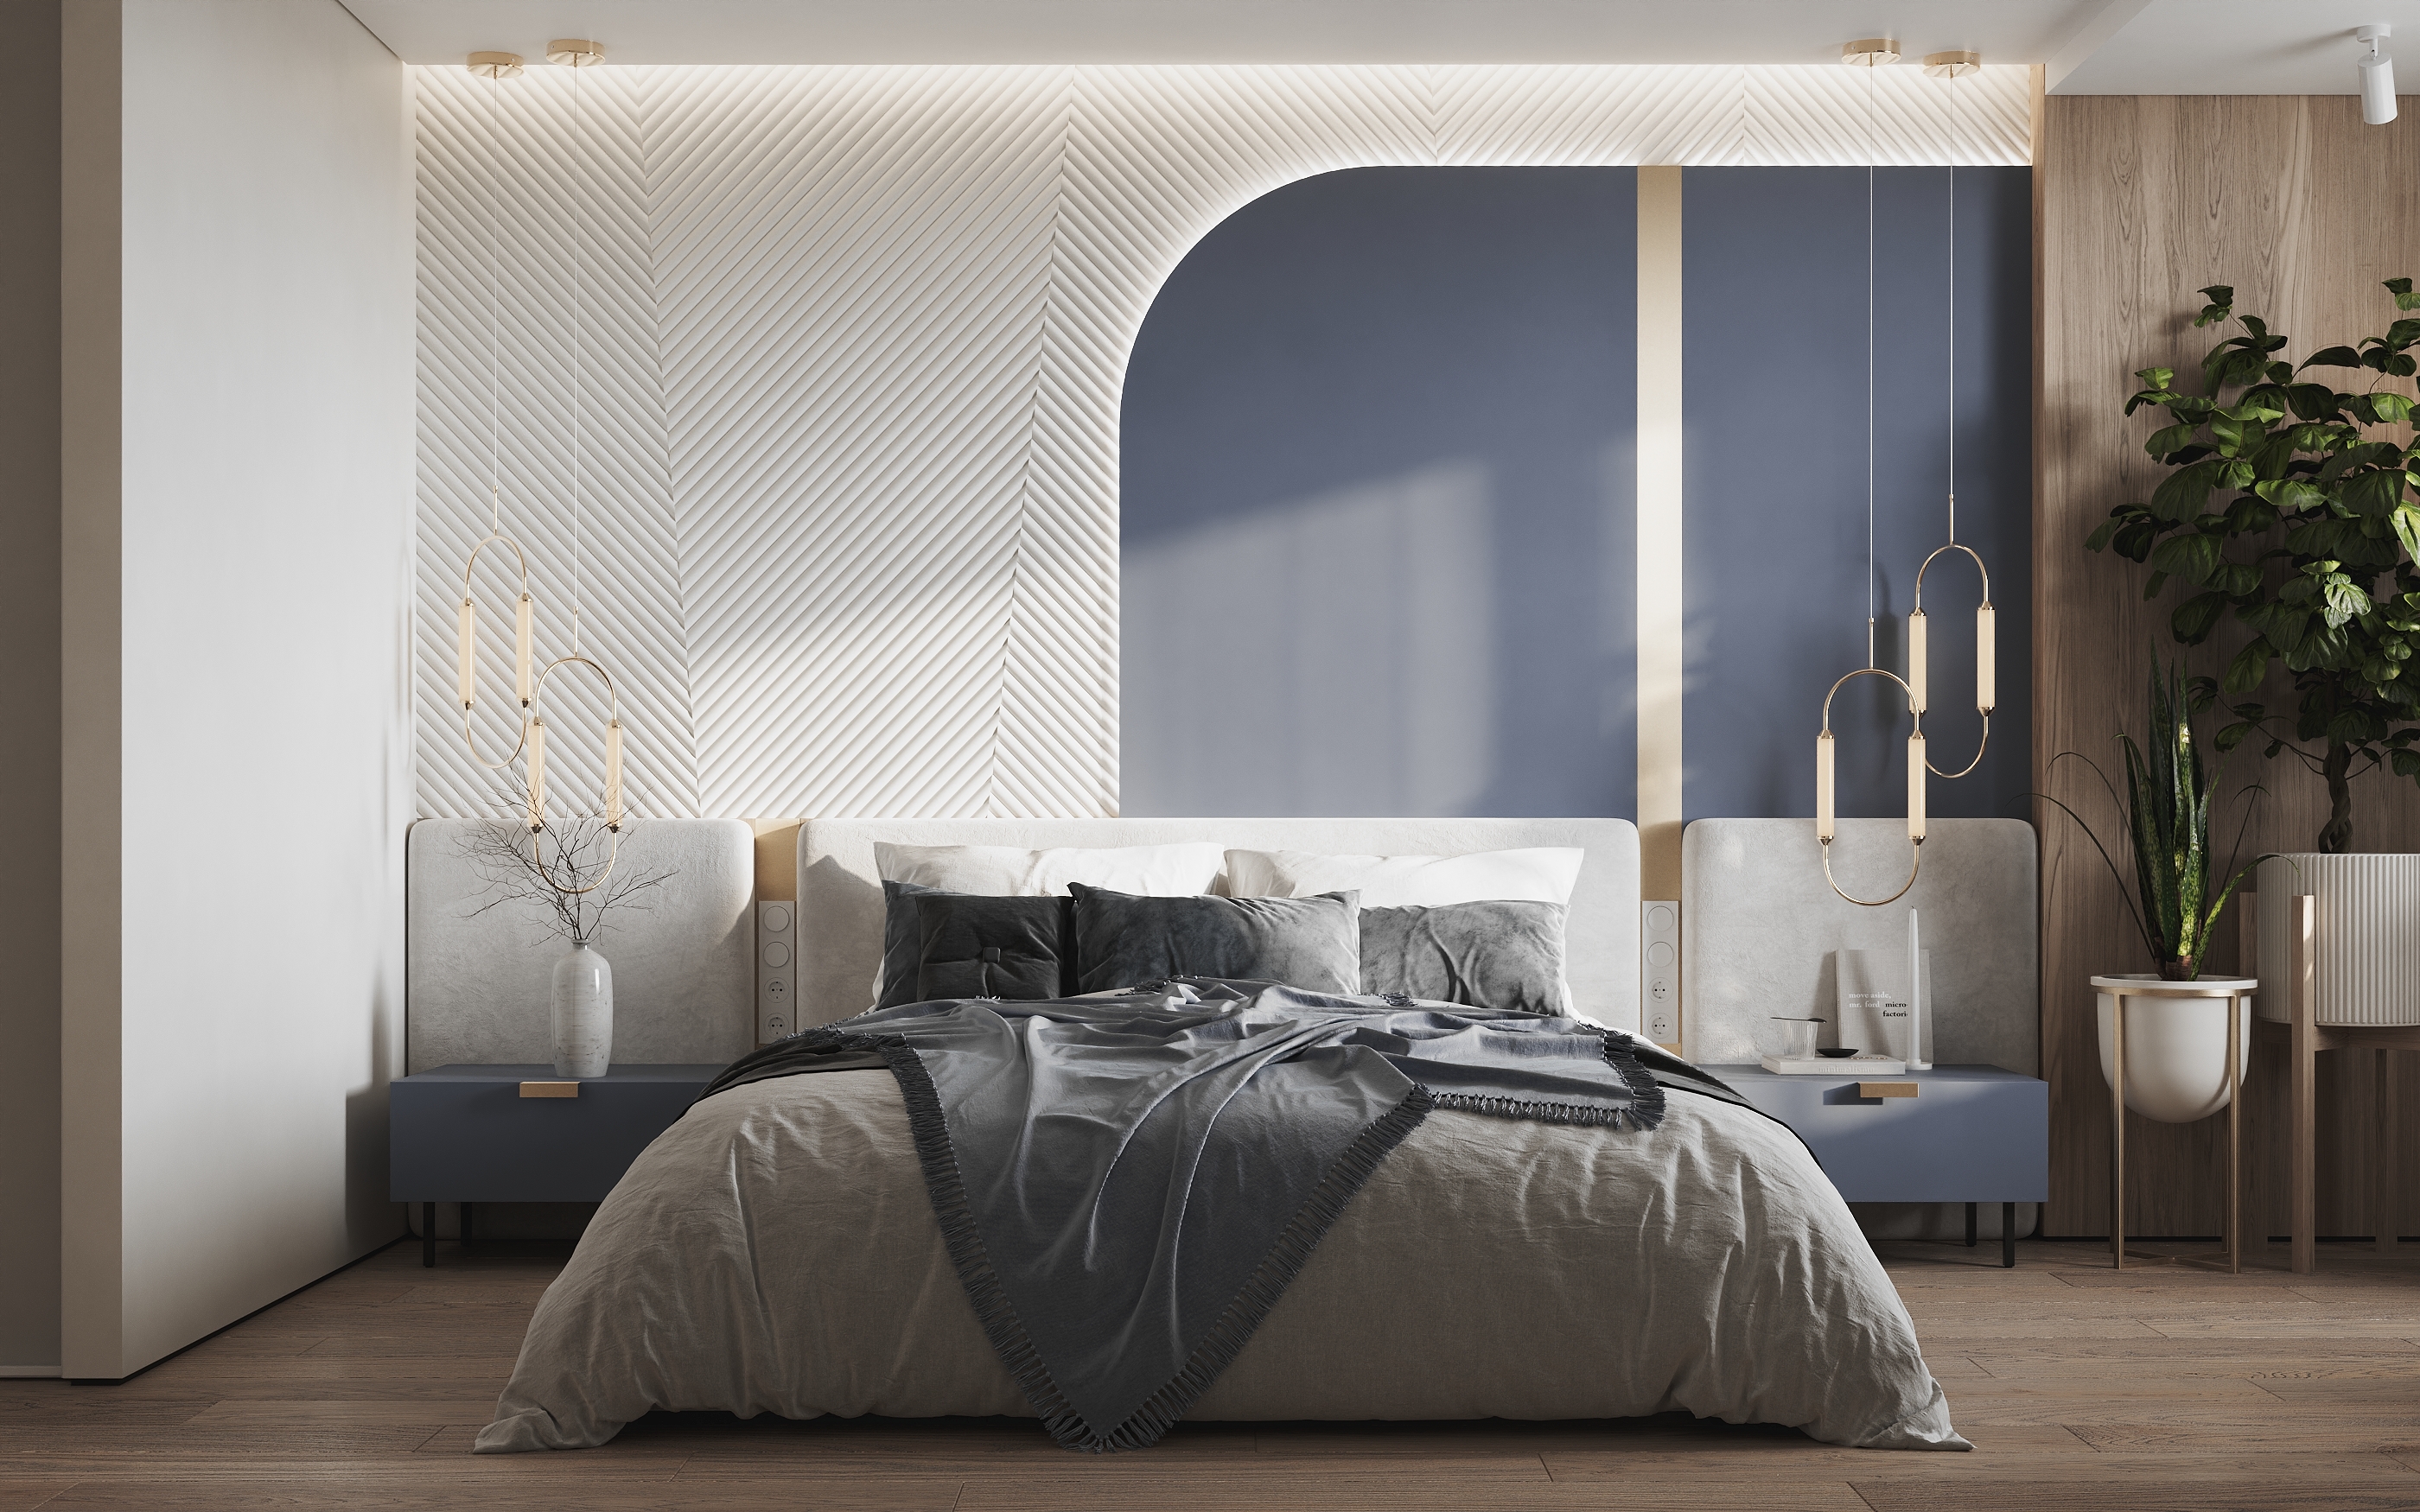 Интерьер спальни cветильниками над кроватью